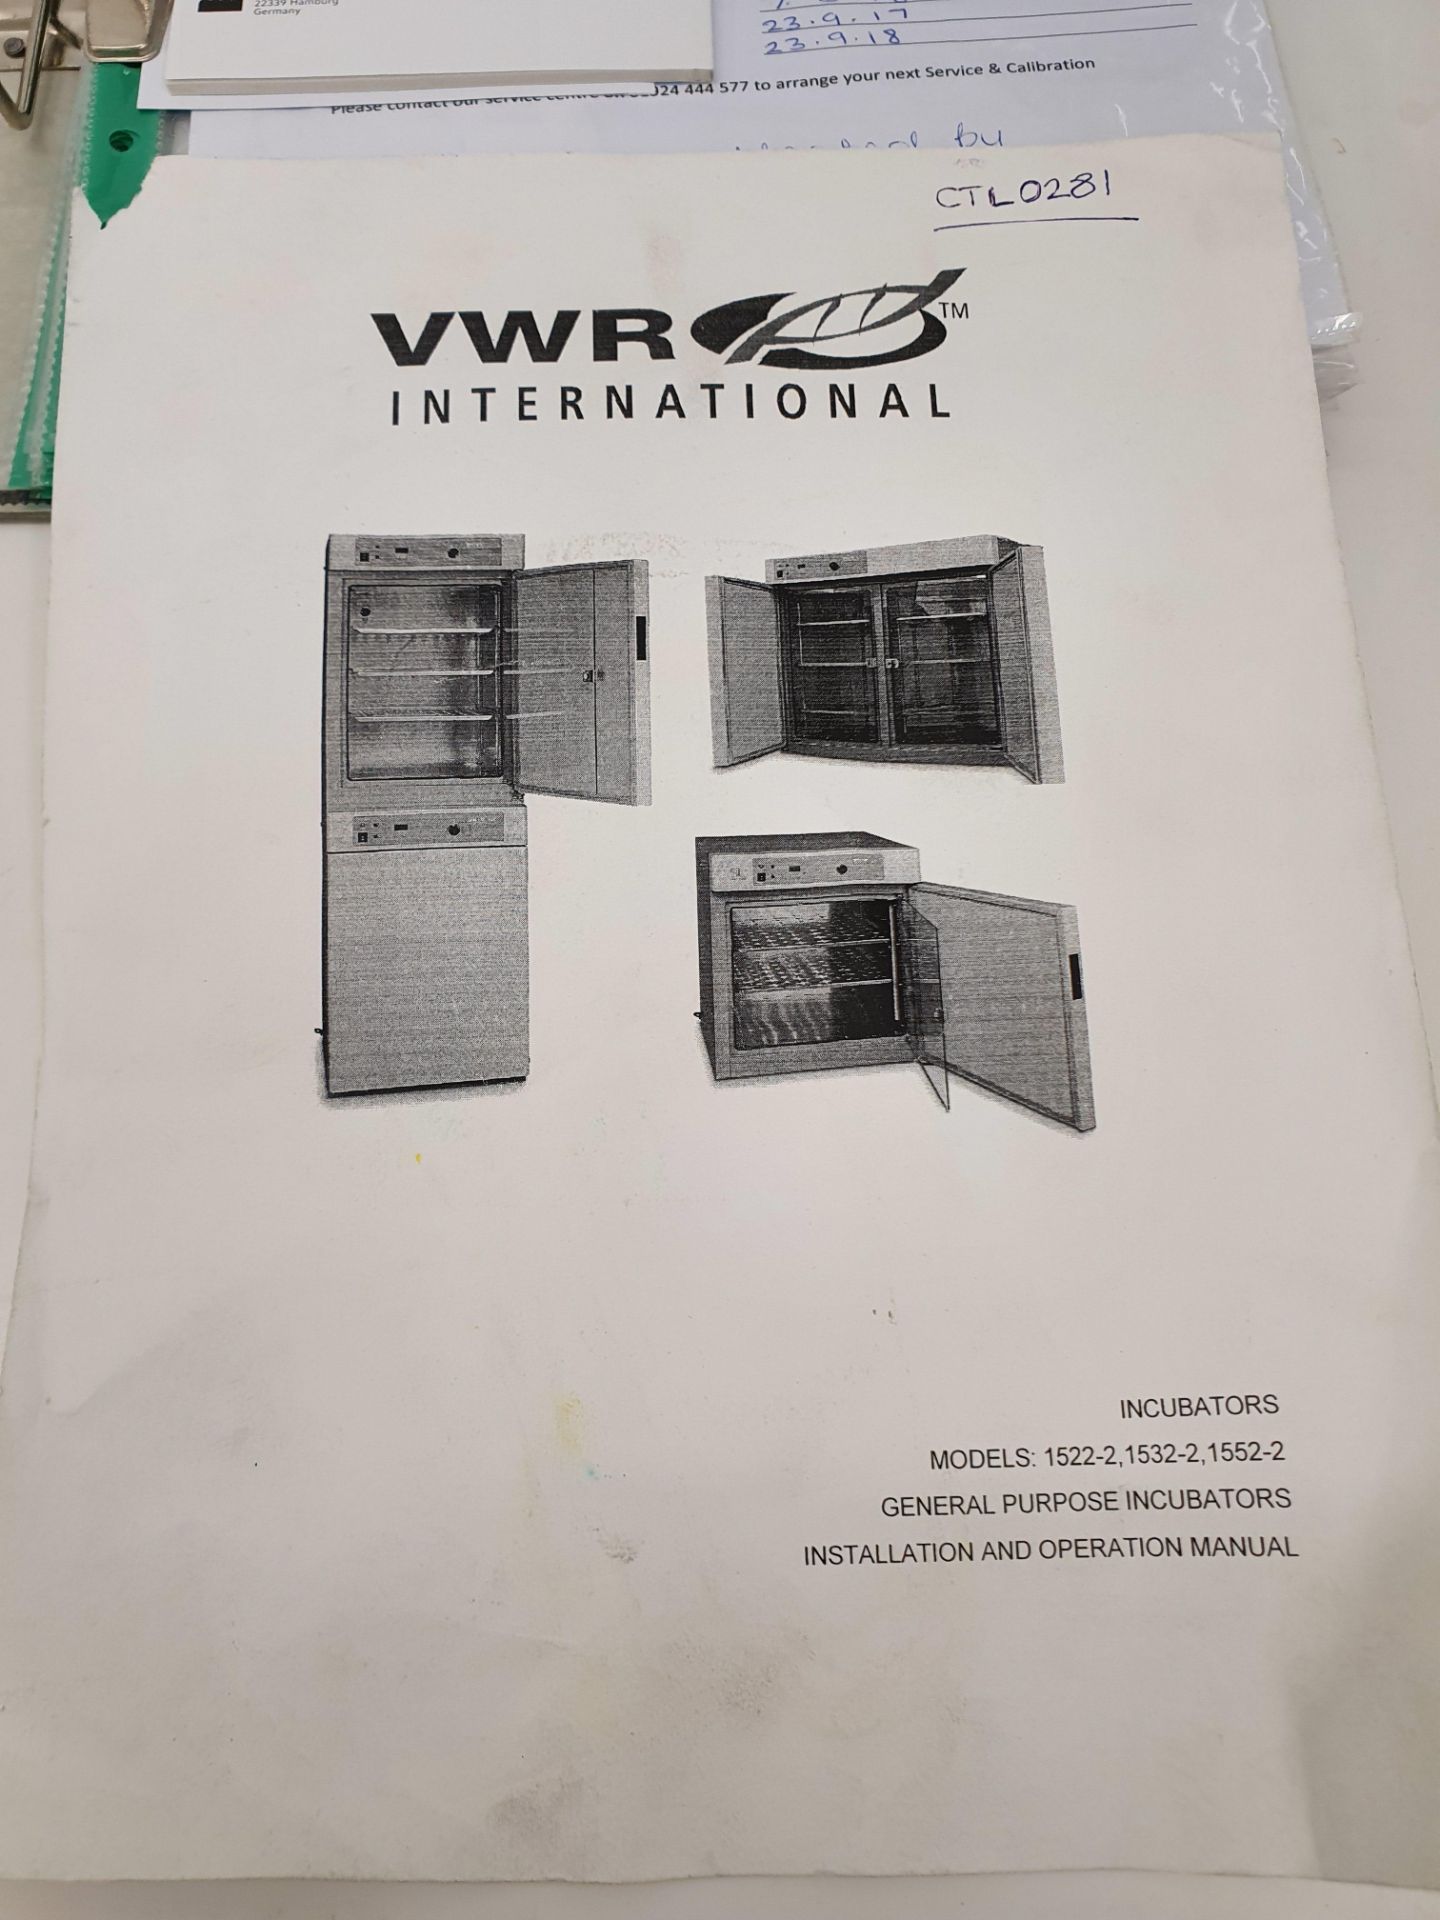 VWR Double Door Bench Top Oven Model 14K110 - Image 5 of 5